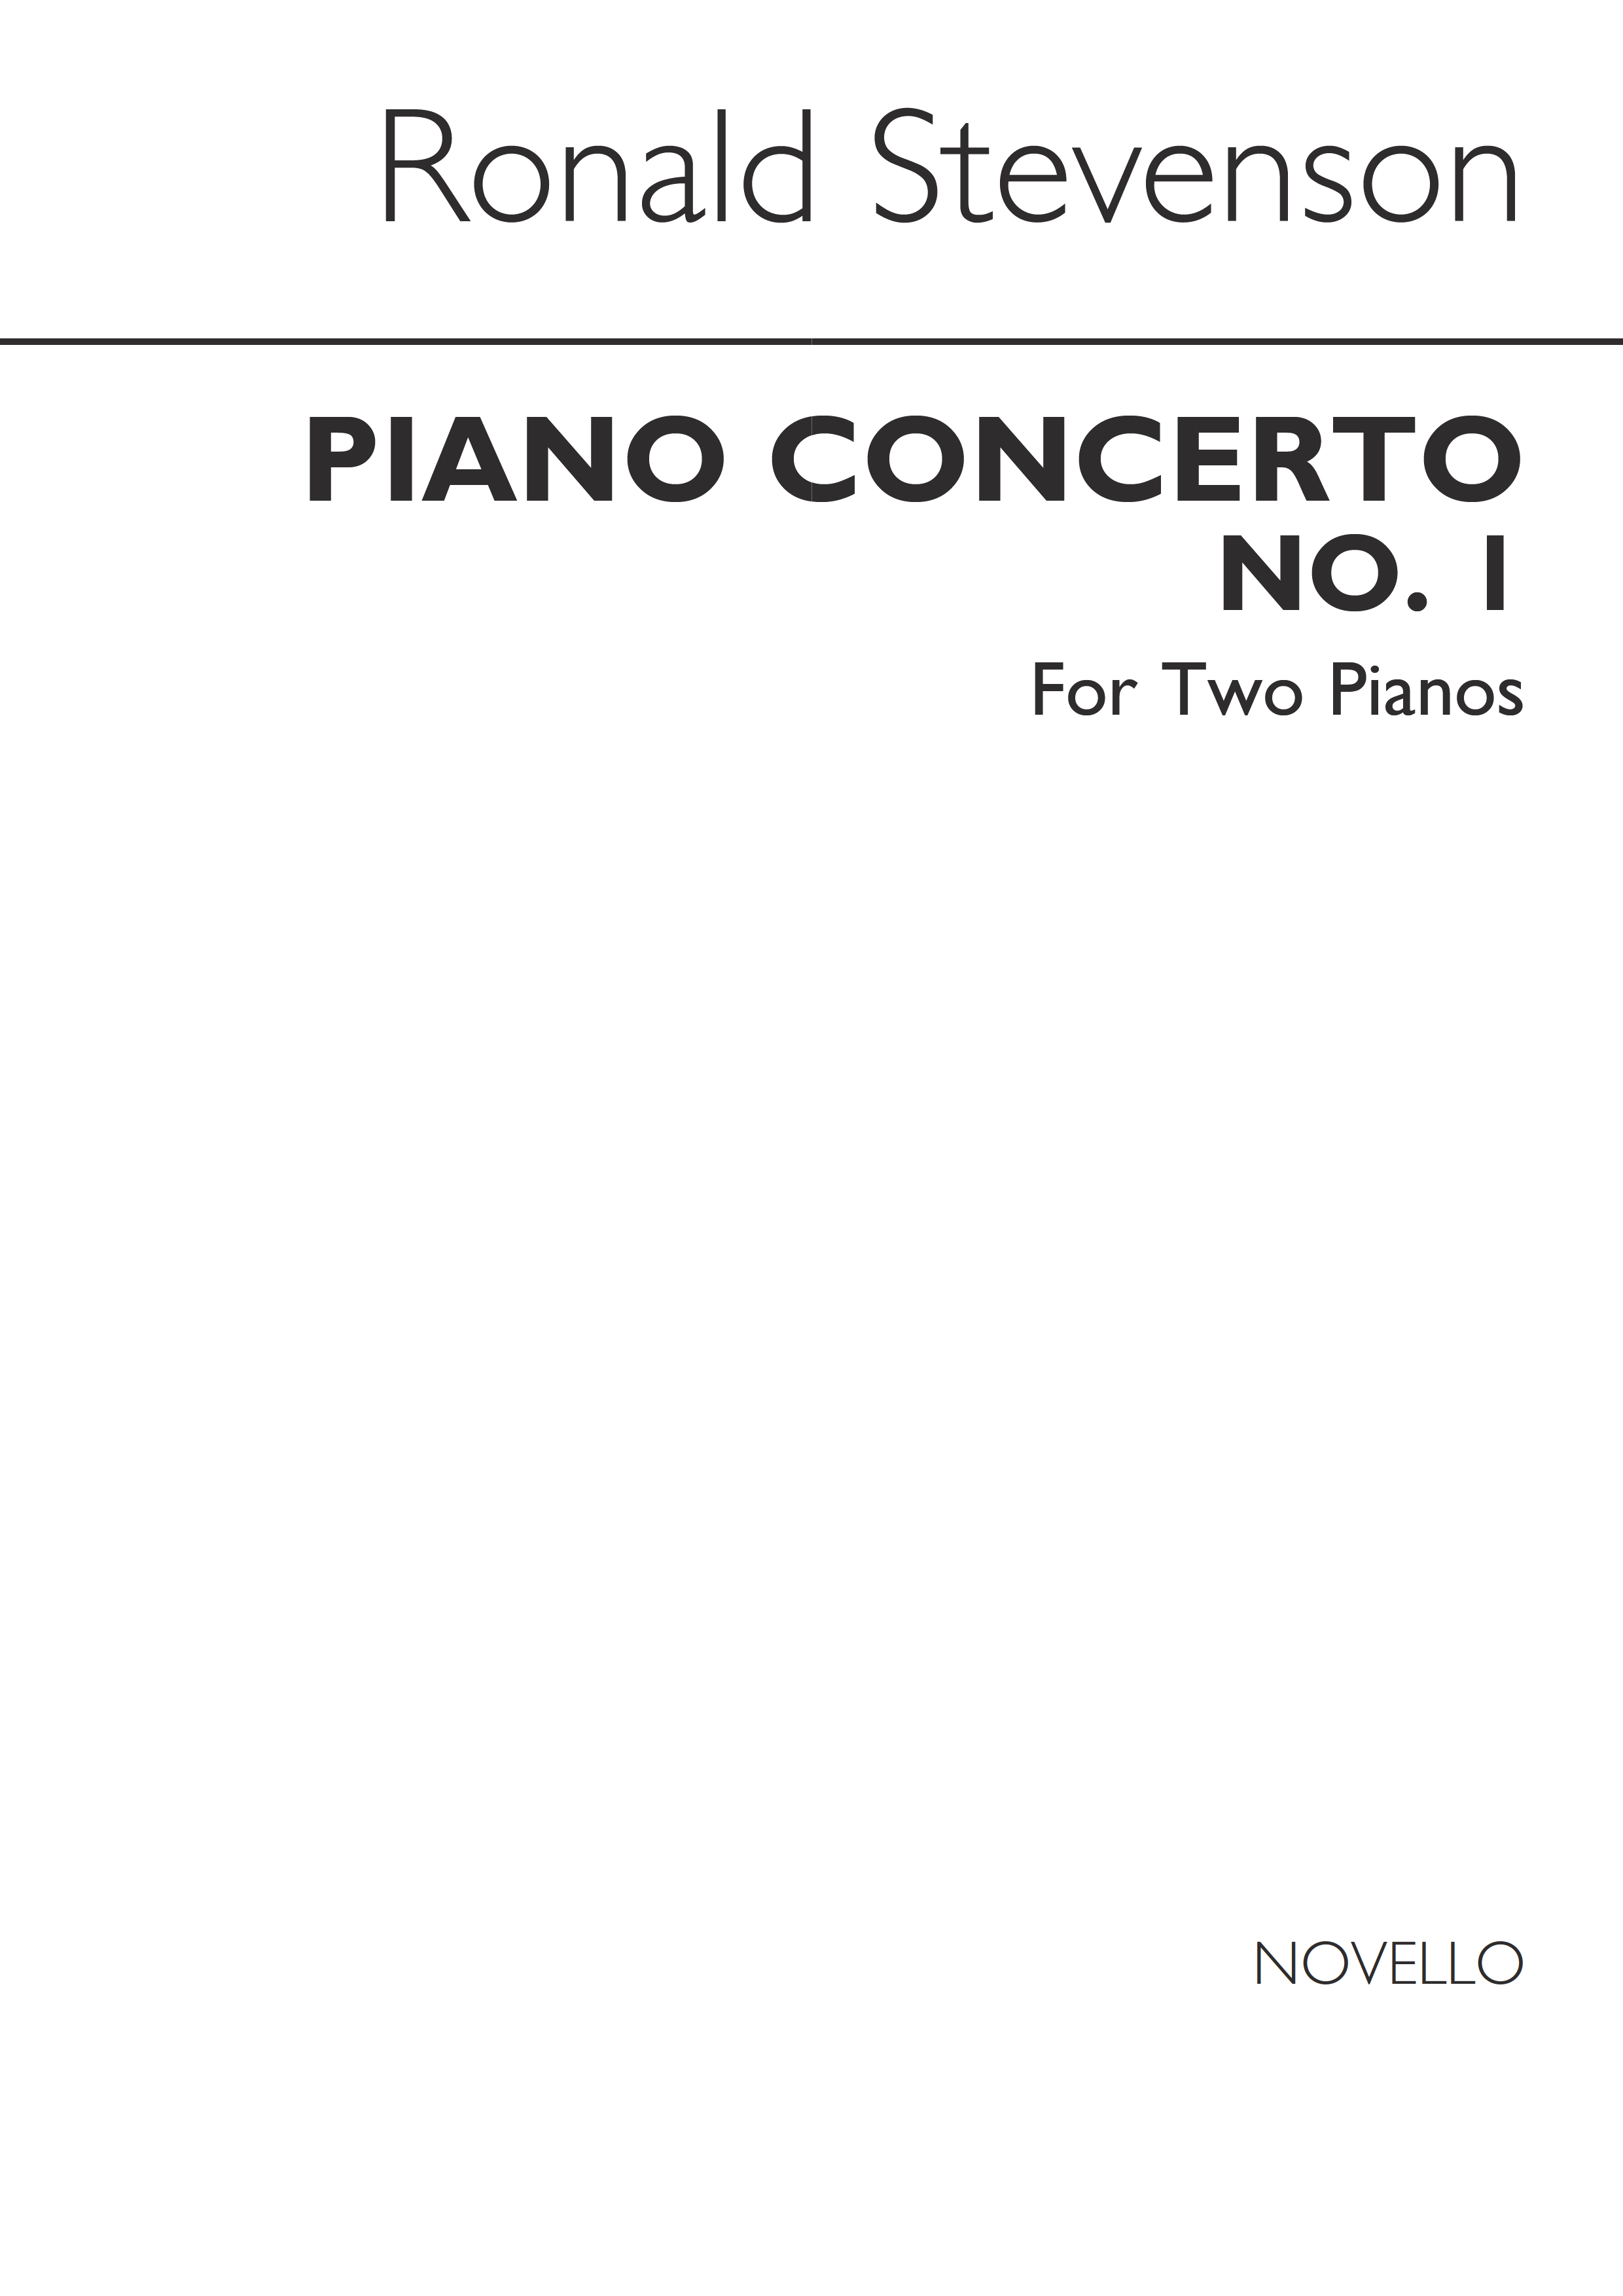 Ronald Stevenson: Concerto For Piano No.1 For 2 Pianos